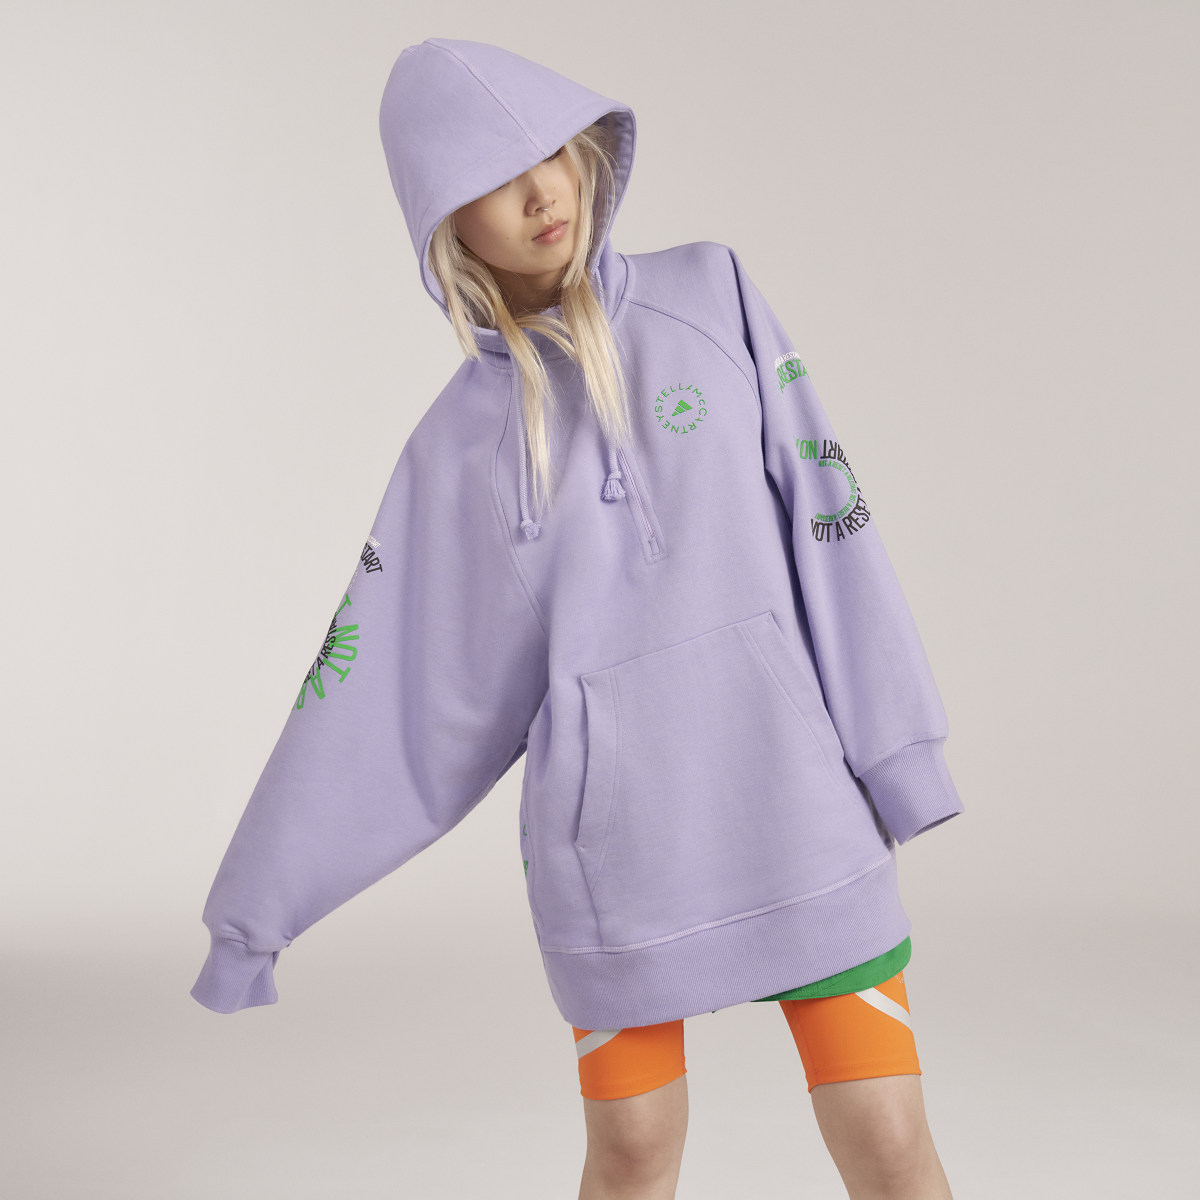 Adidas by Stella McCartney Pull On - Gender Neutral. 5